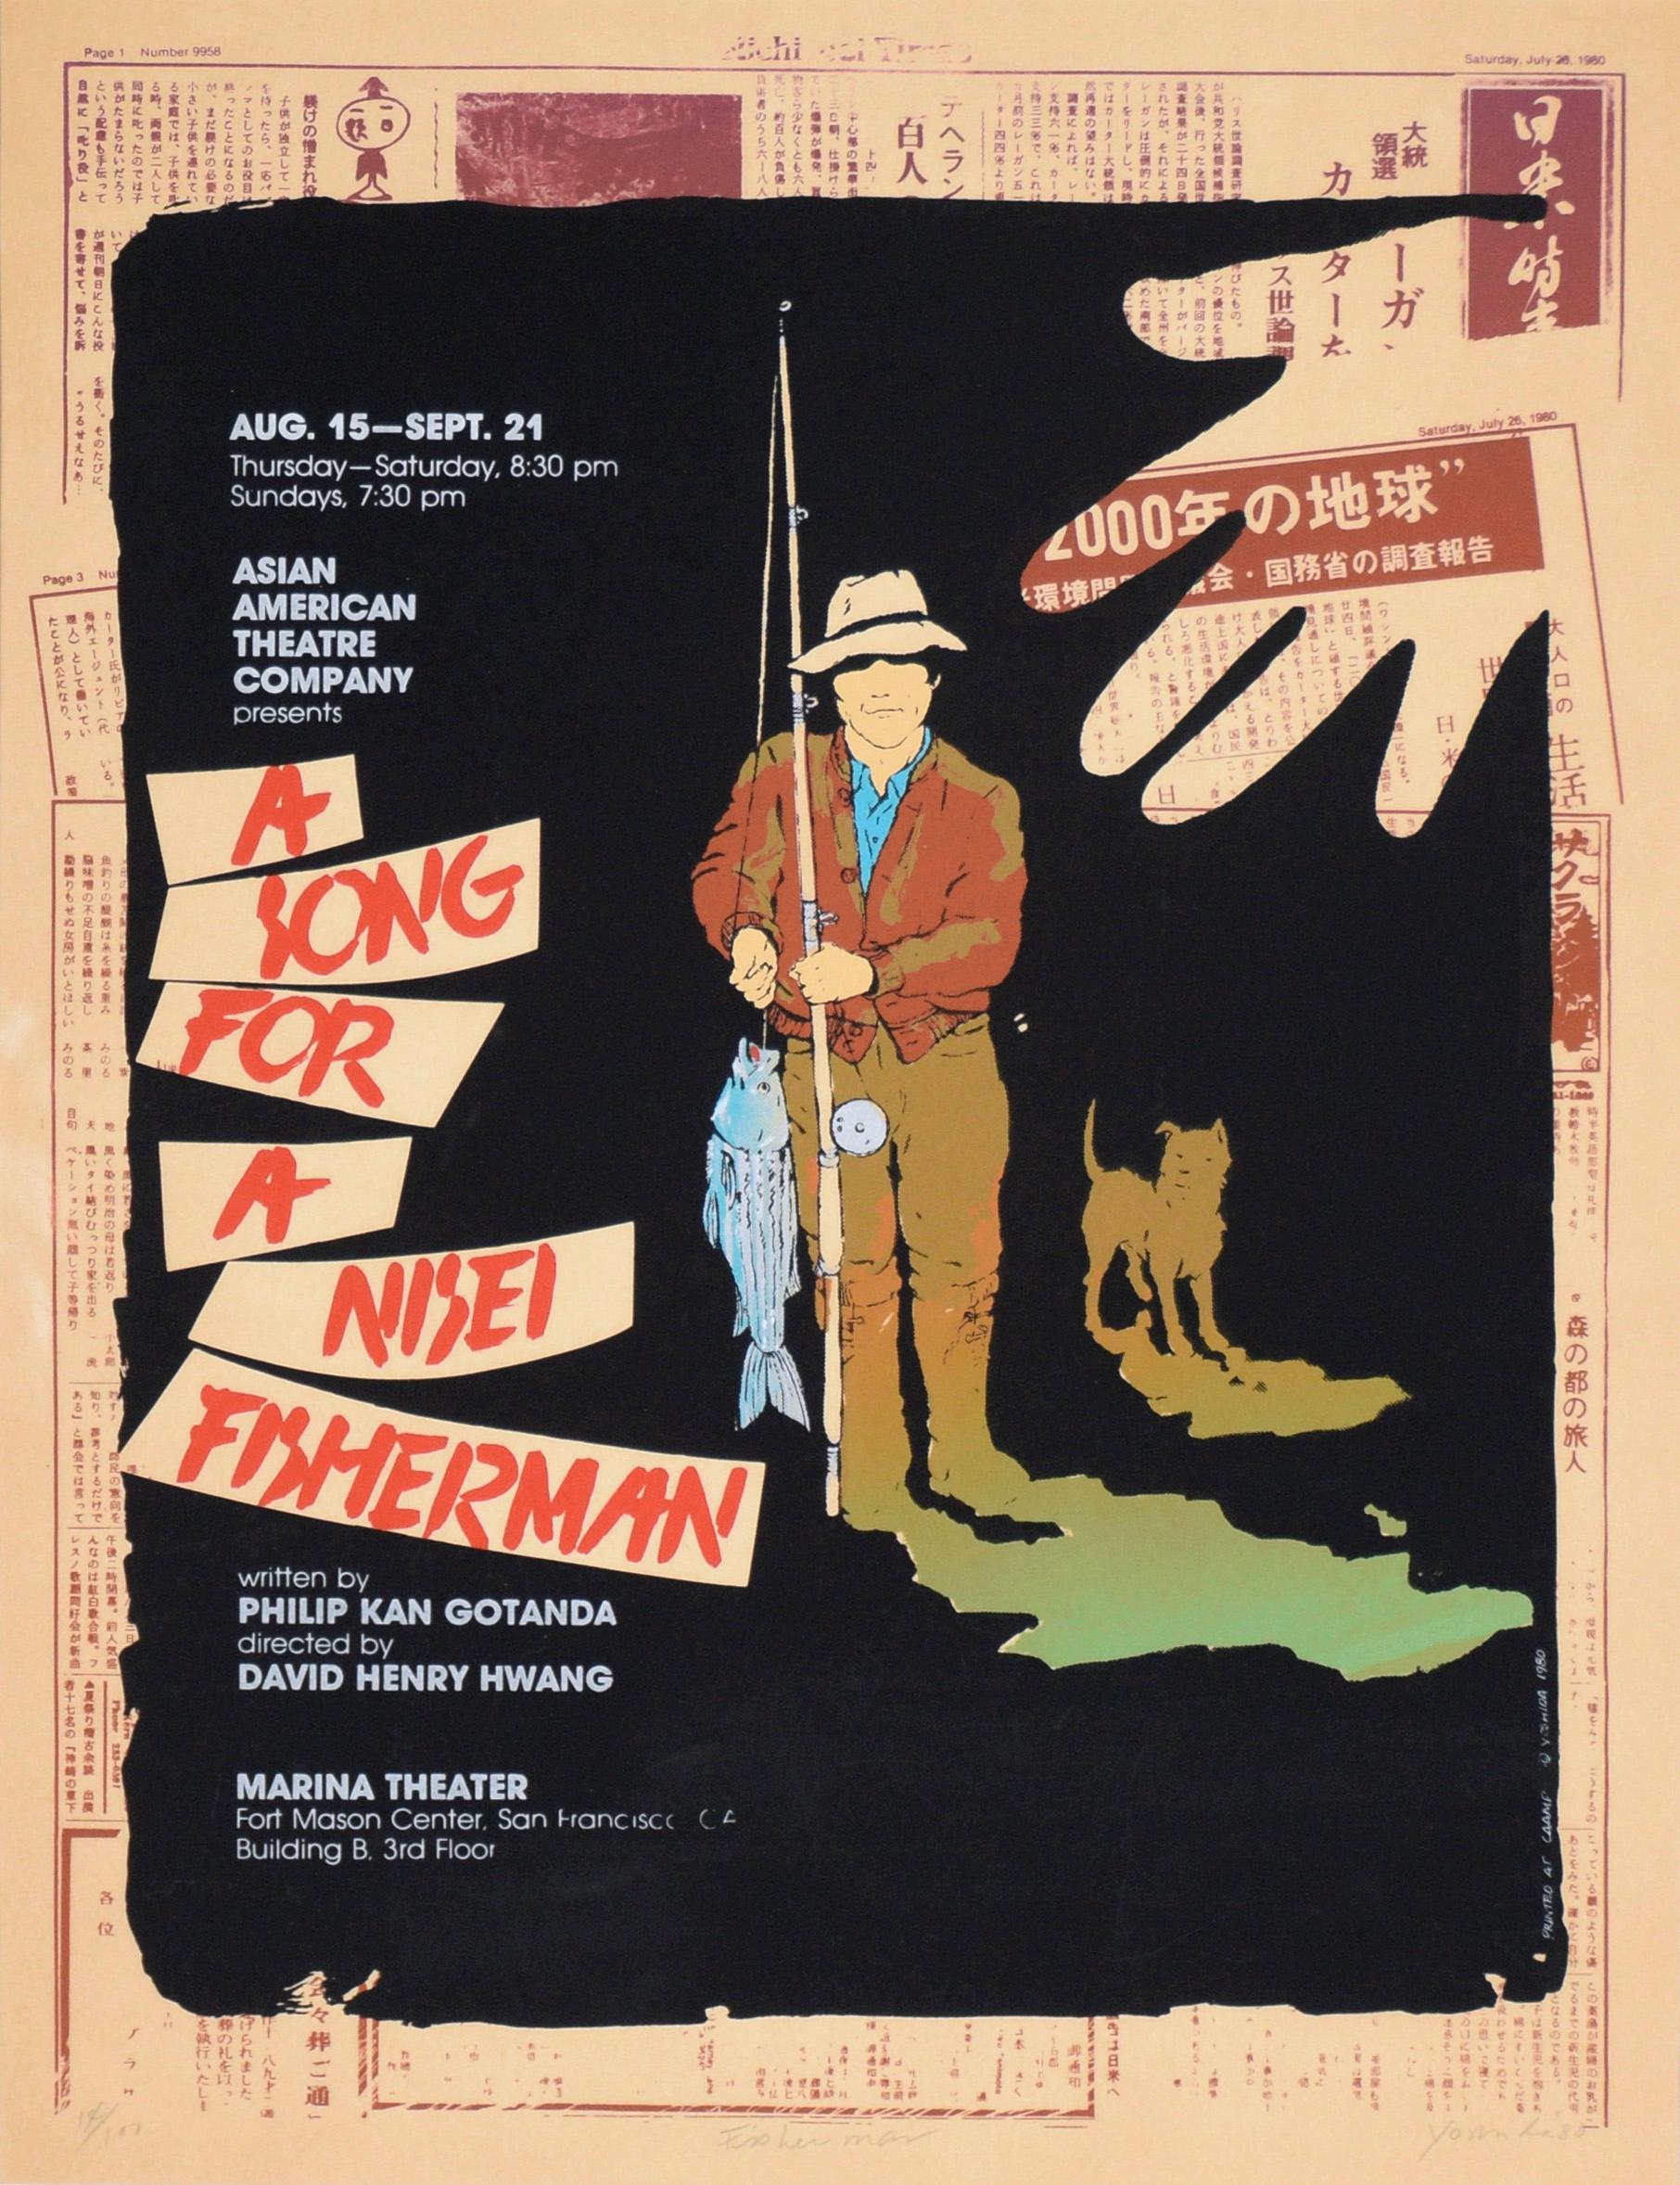 Affiche « A Song for a Nesei Fisherman », sérigraphie en édition limitée n° 14 sur 100 - Print de Chester Yoshida